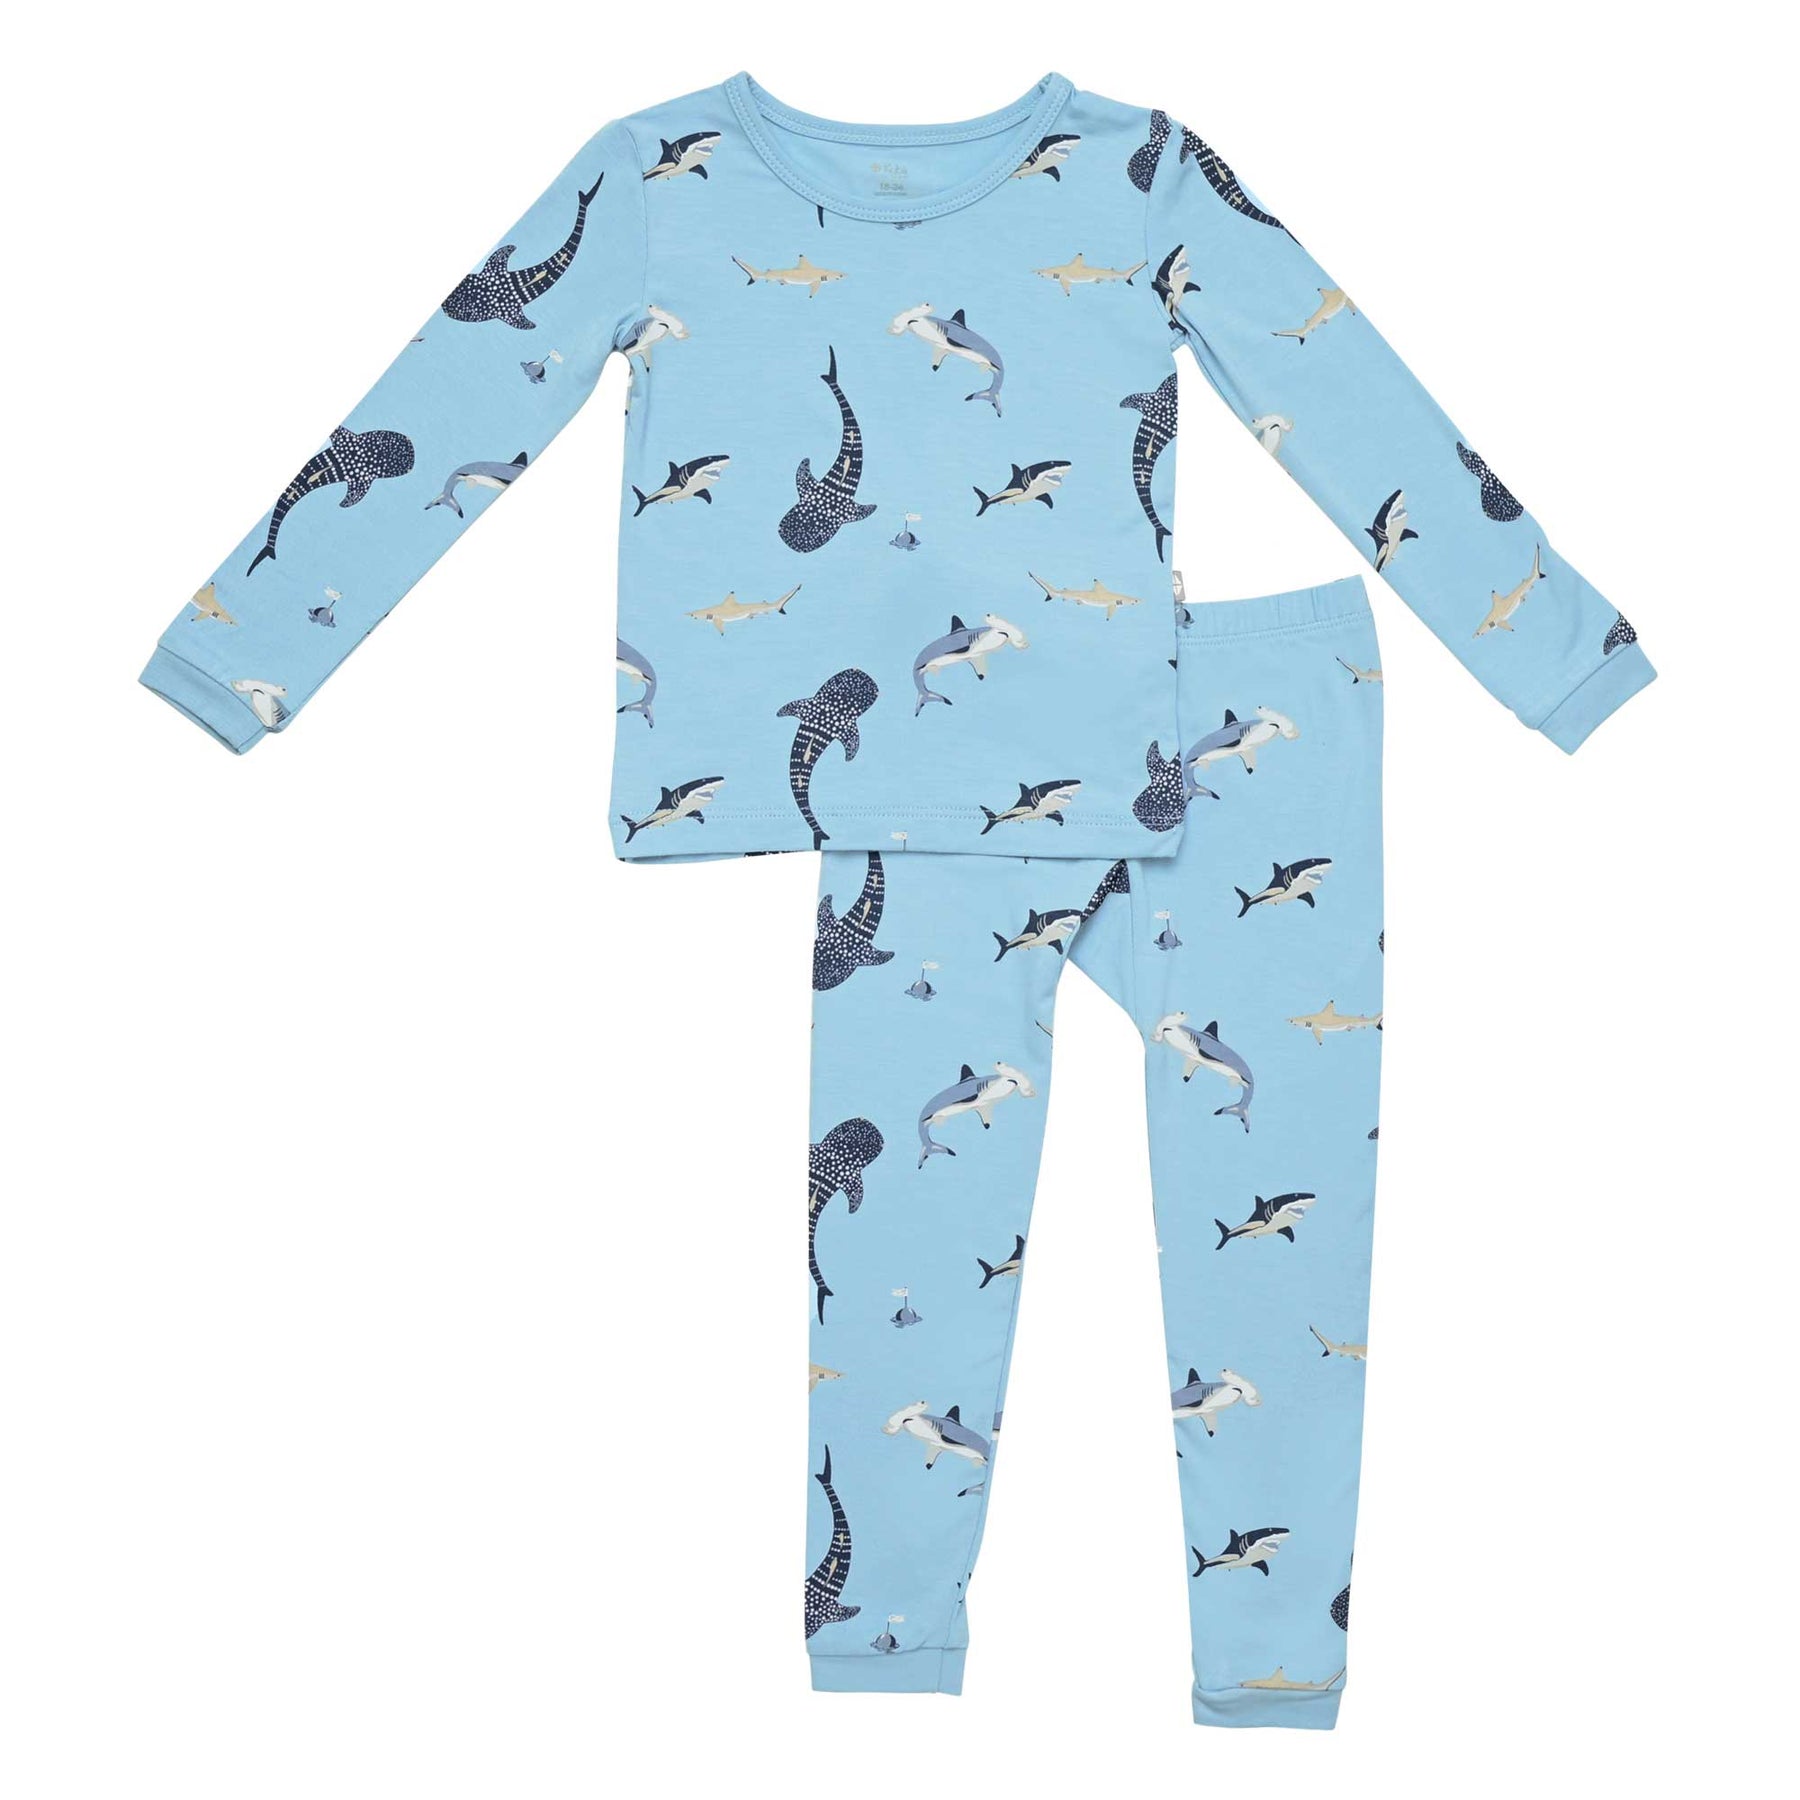 Boys Girls Kids Baby Shark Doo doo Toddler Pyjamas PJ Set 18